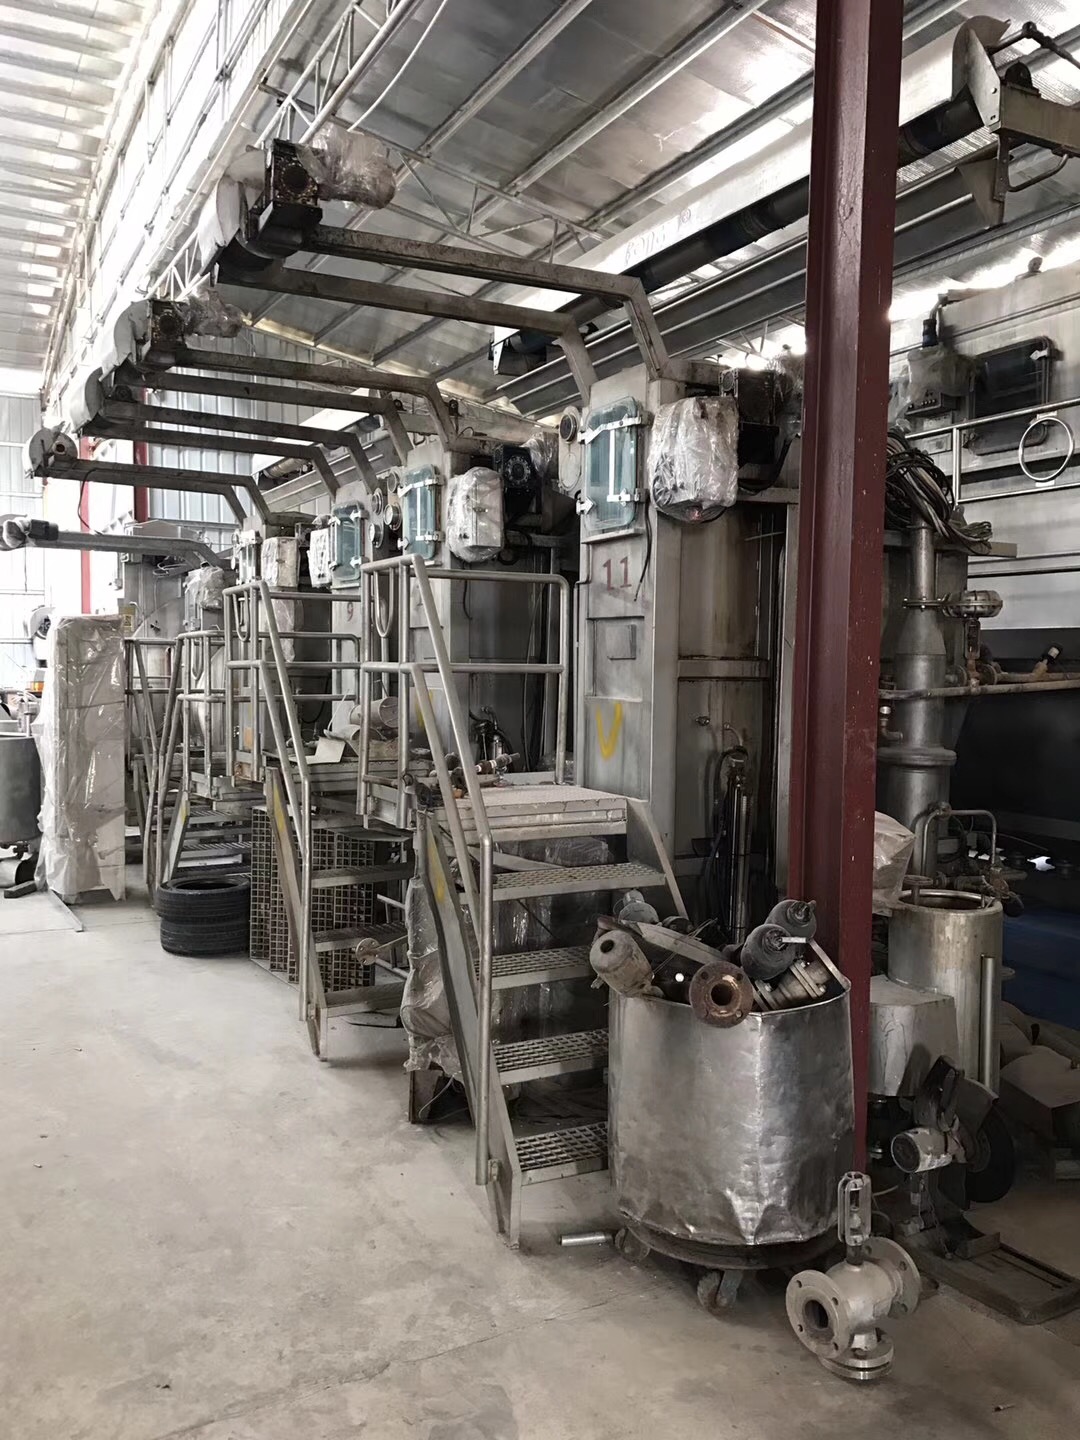 江门恩平市二手滚齿机回收/旧机械设备回收公司